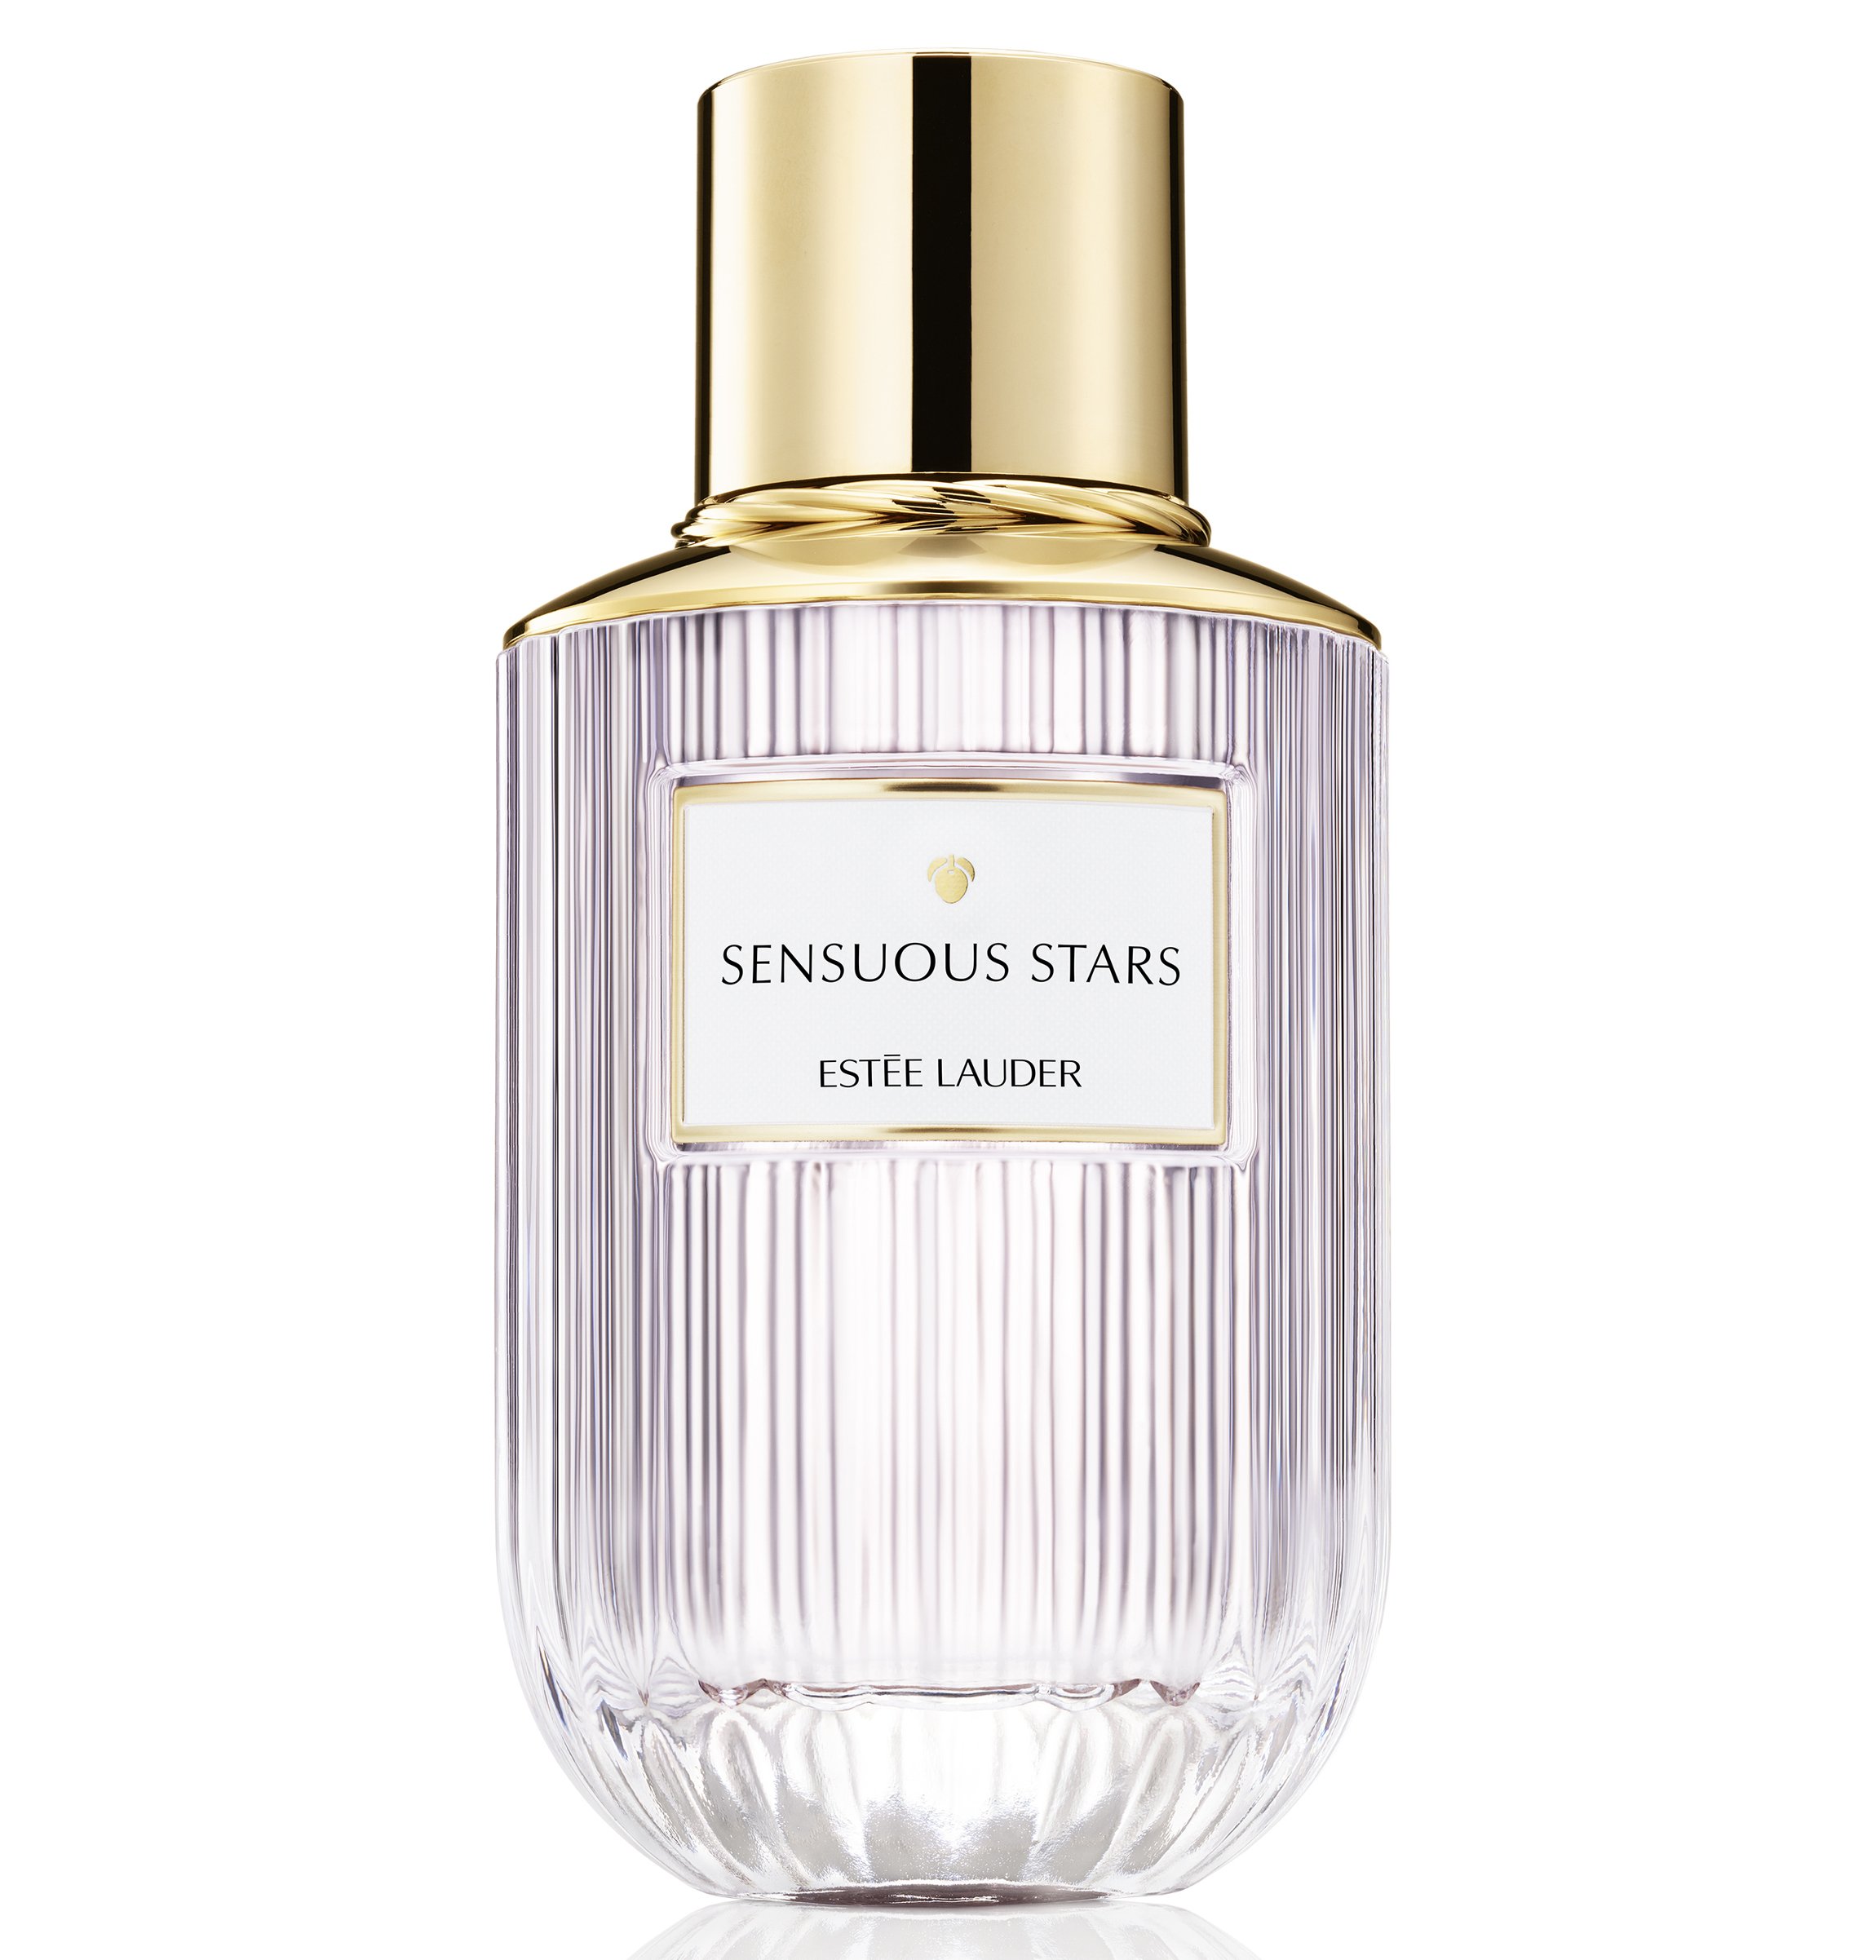 2. Estee Lauder Sensuous Stars Eau de Parfum €84 for 40ml